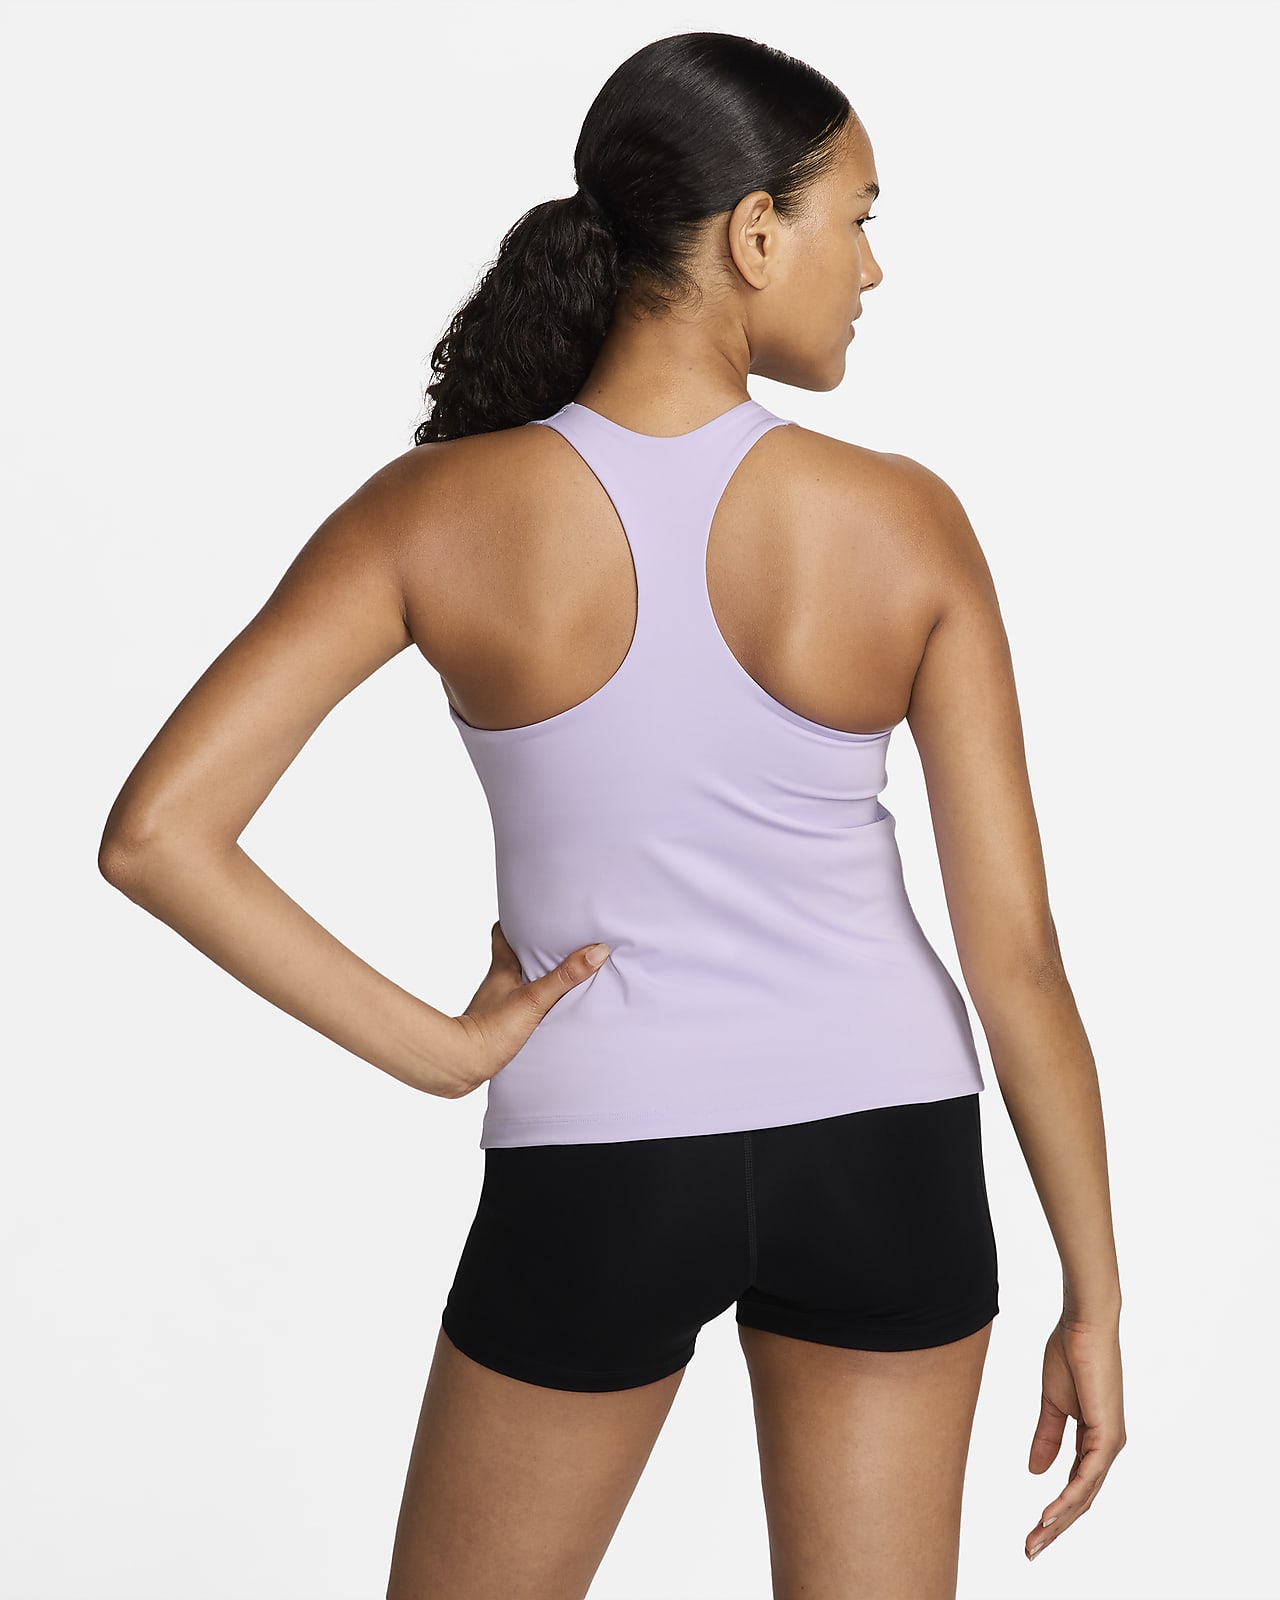 Nike Women's Dri-FIT Built-in light-support sports bra Training Tank Top (XS,  Black) 